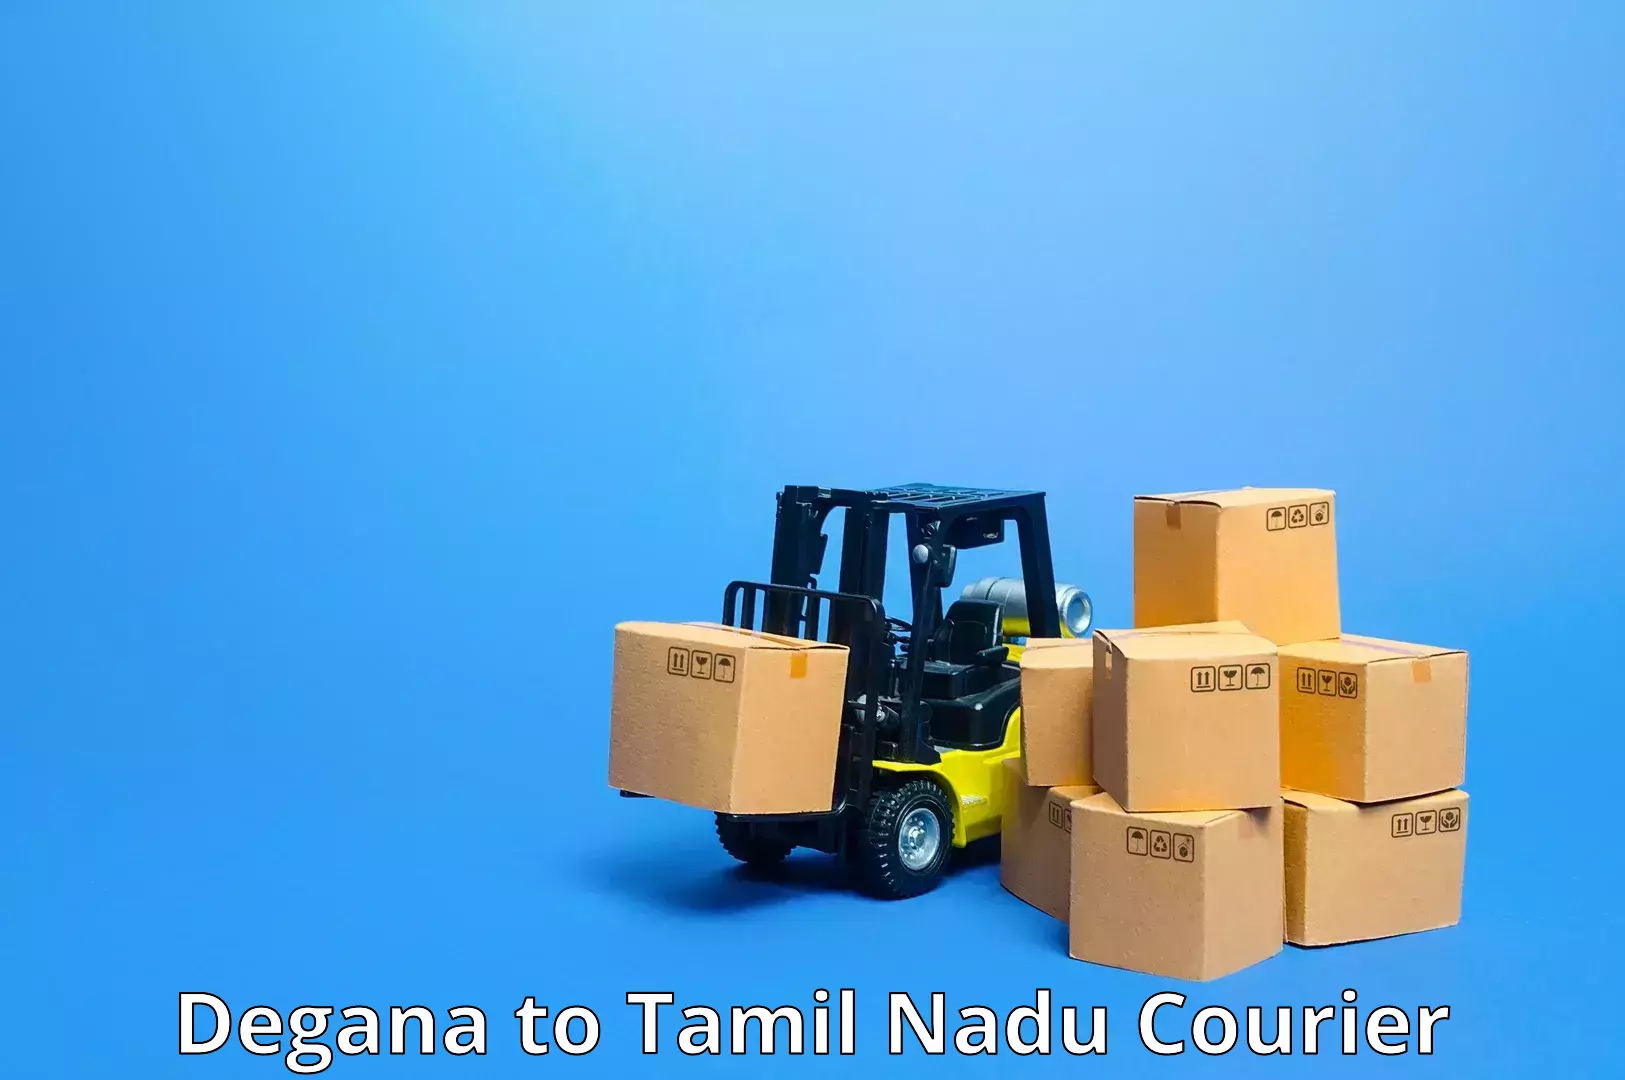 Secure packaging in Degana to Tamil Nadu